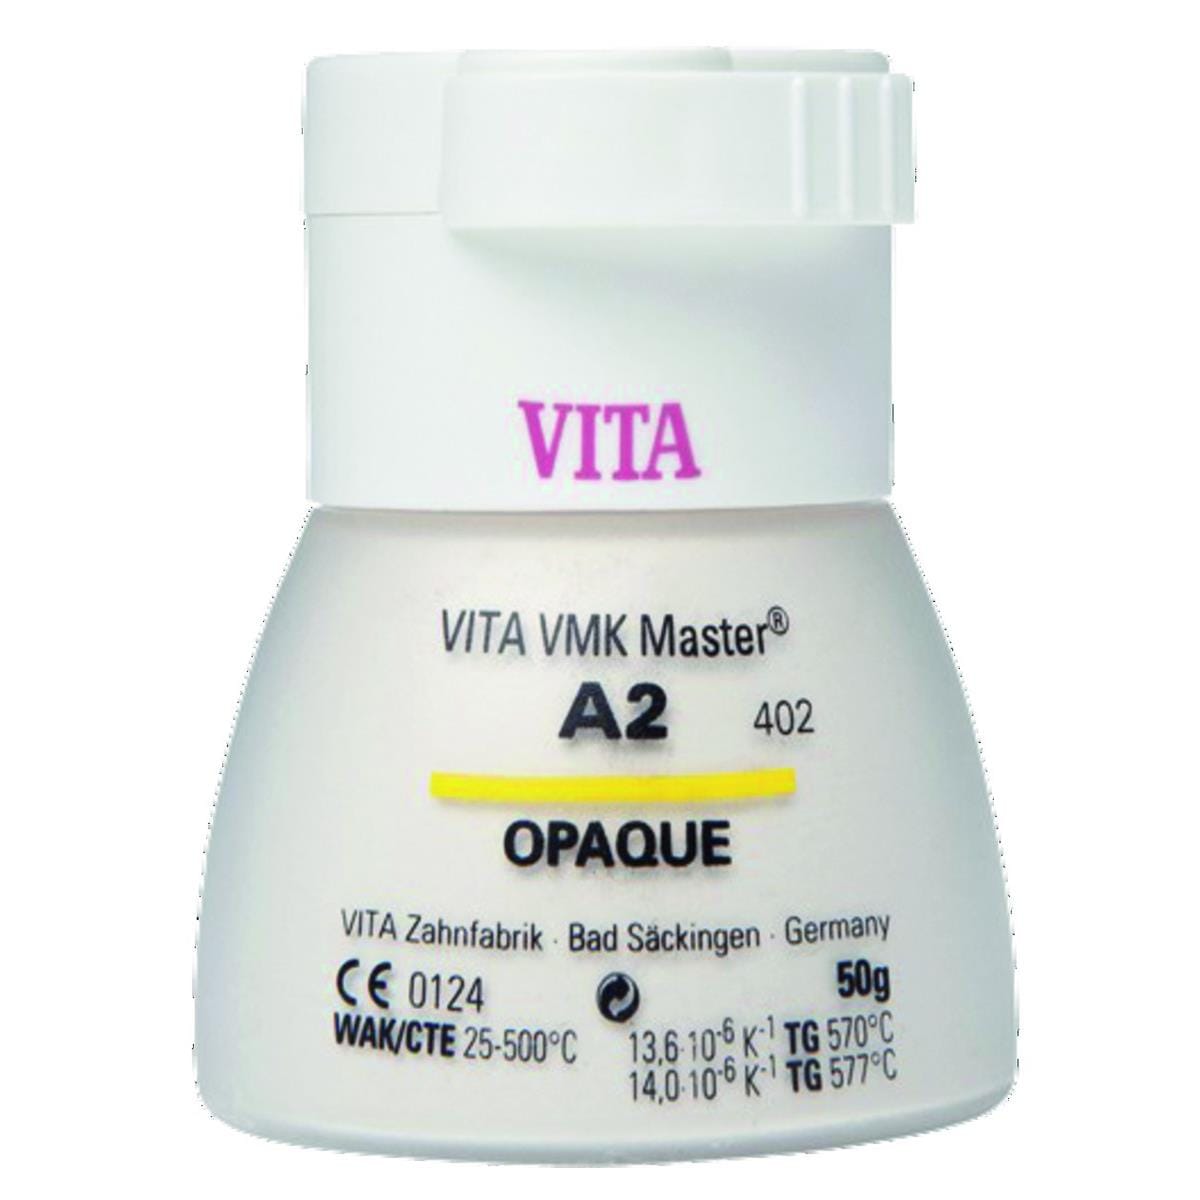 VMK Master VITA - Opaque poudre - B4 - Le flacon de 50 g